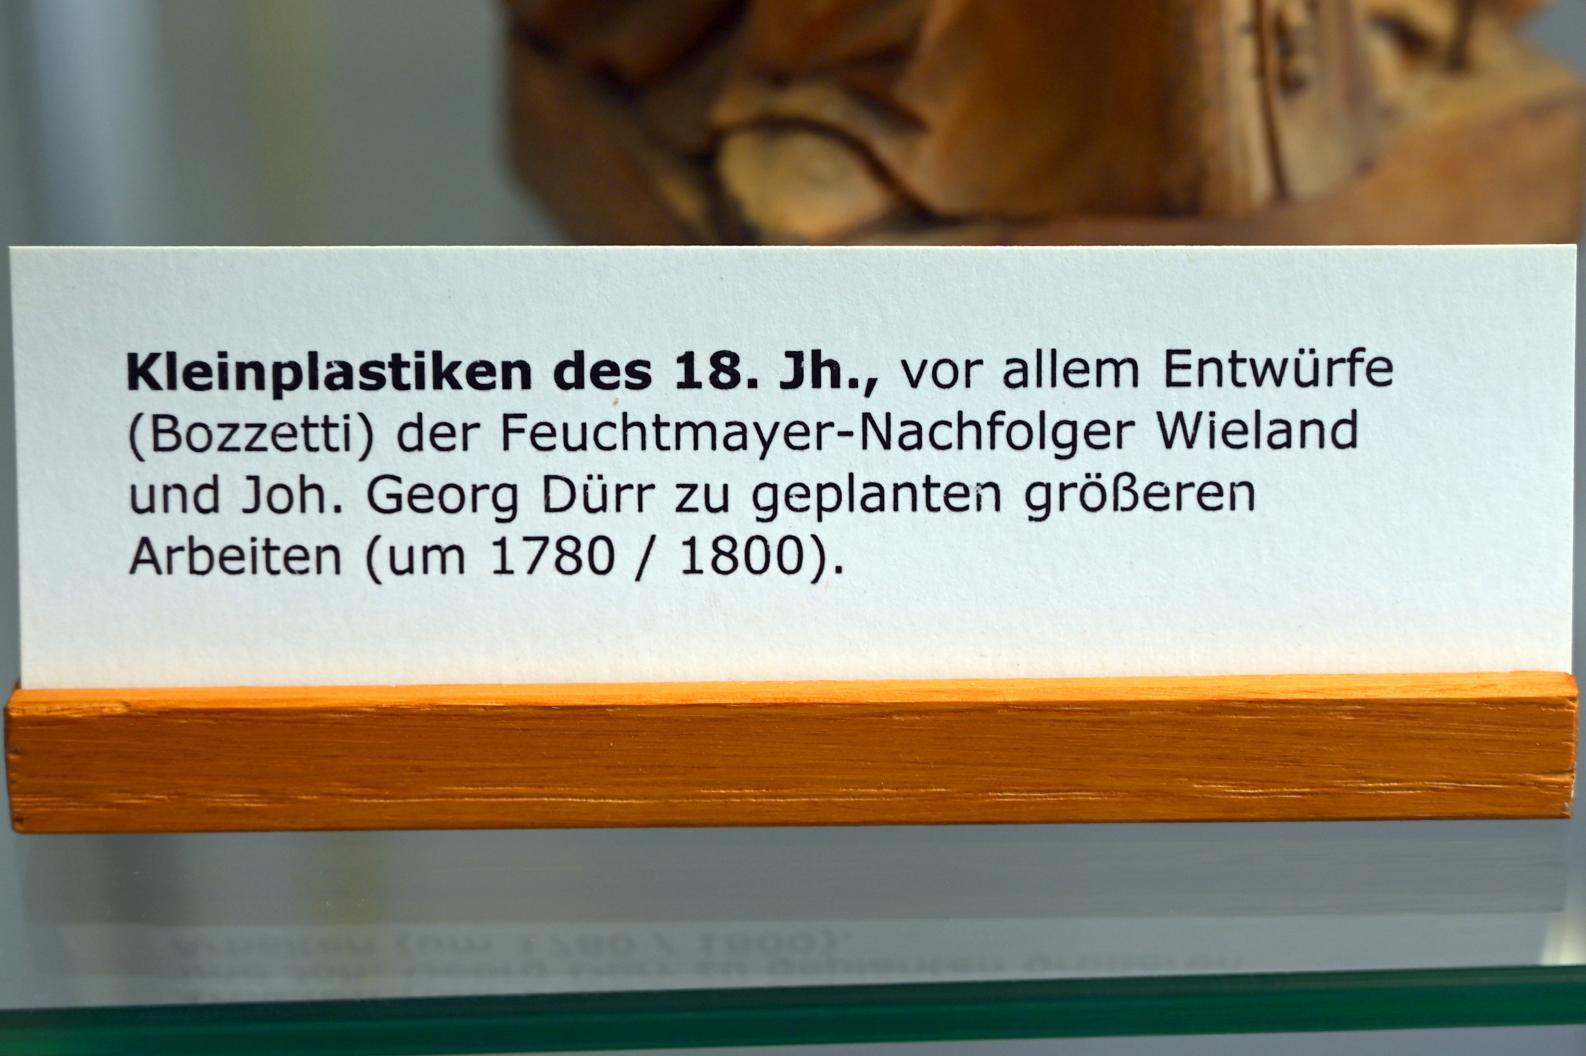 Kleinplastik, Überlingen, Städtisches Museum, Kleiner Barocksaal, 18. Jhd., Bild 2/2